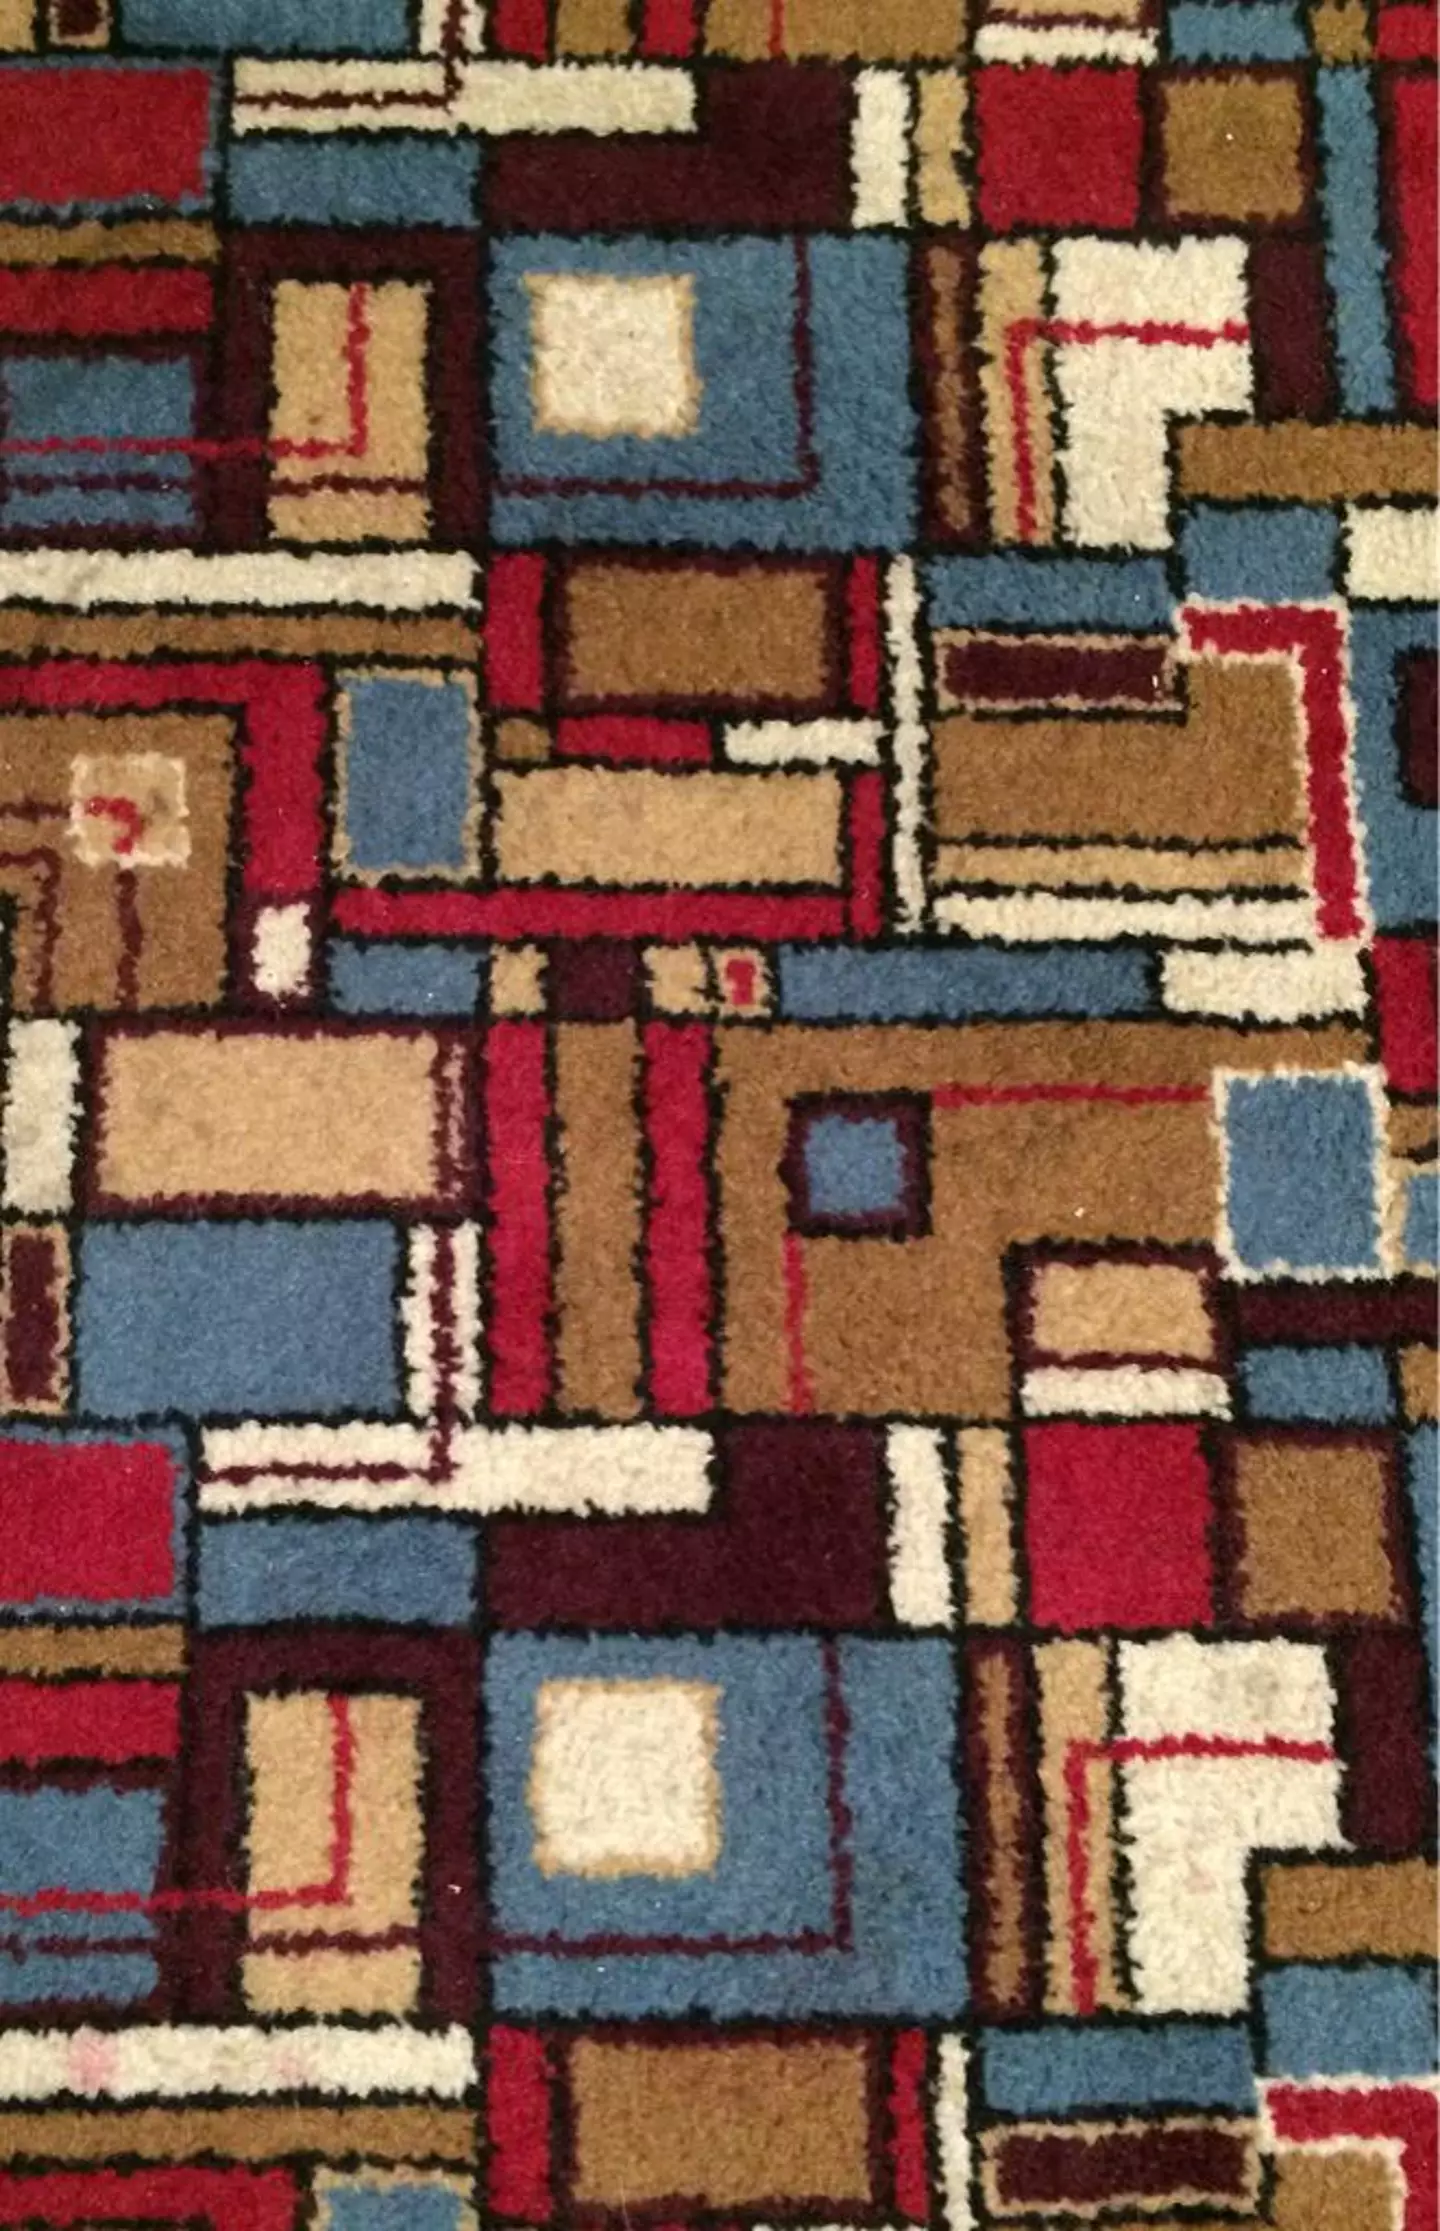 Each of the pub chain's boast their own bespoke carpet design.